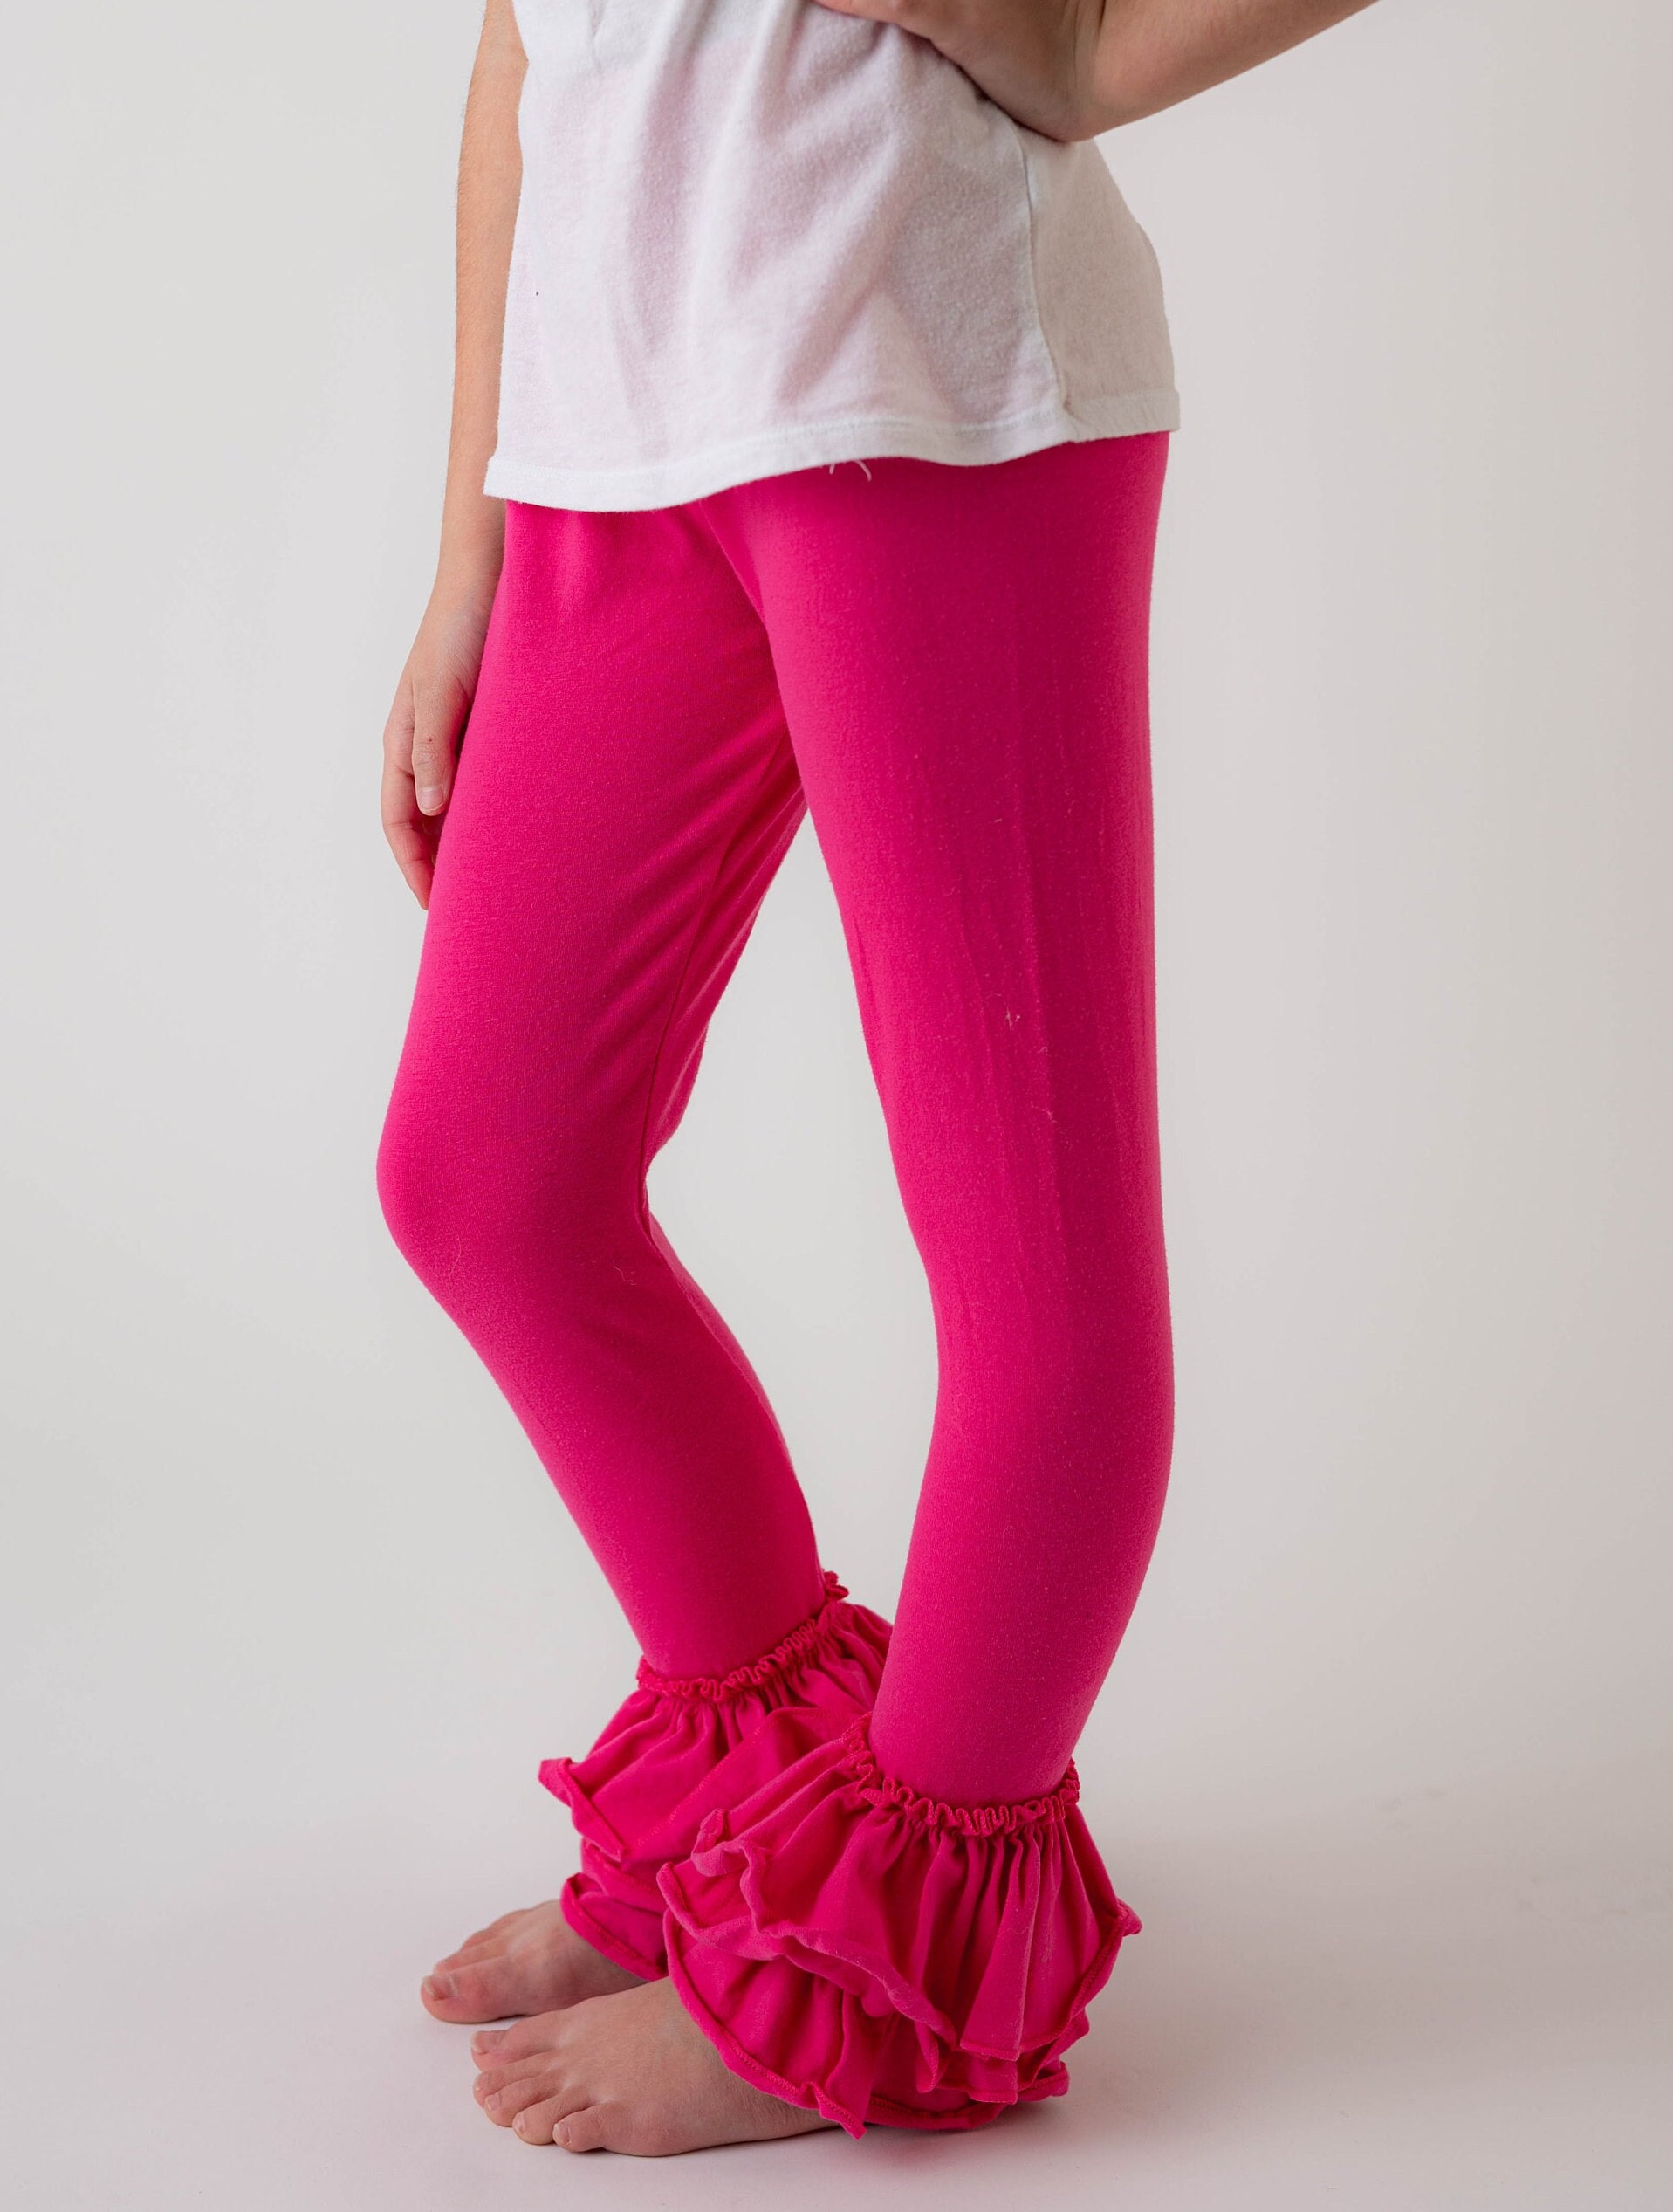 Hot Pink Ruffle Pants, Pink Leggings Girls Bottoms